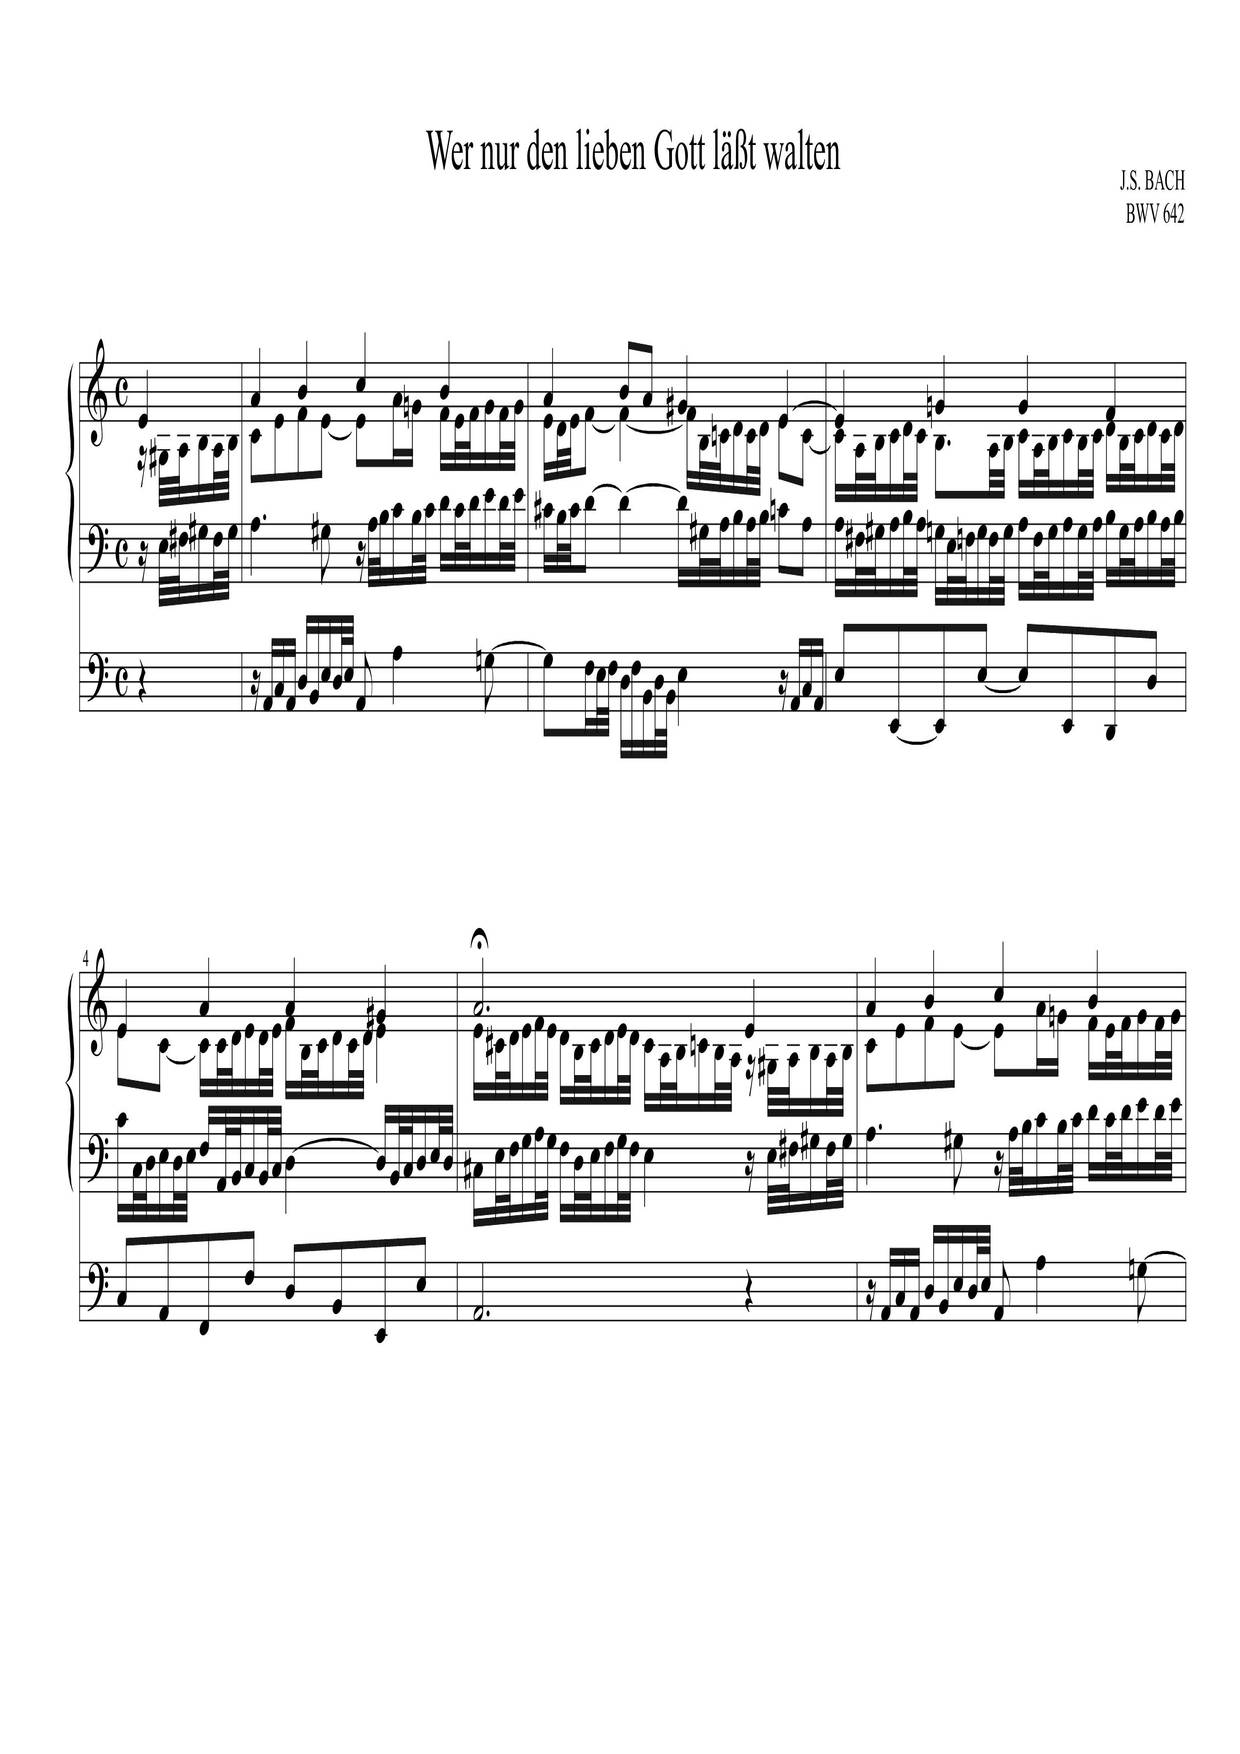 Chorale Prelude 'Wer Nur Den Lieben Gott', BWV 642琴谱